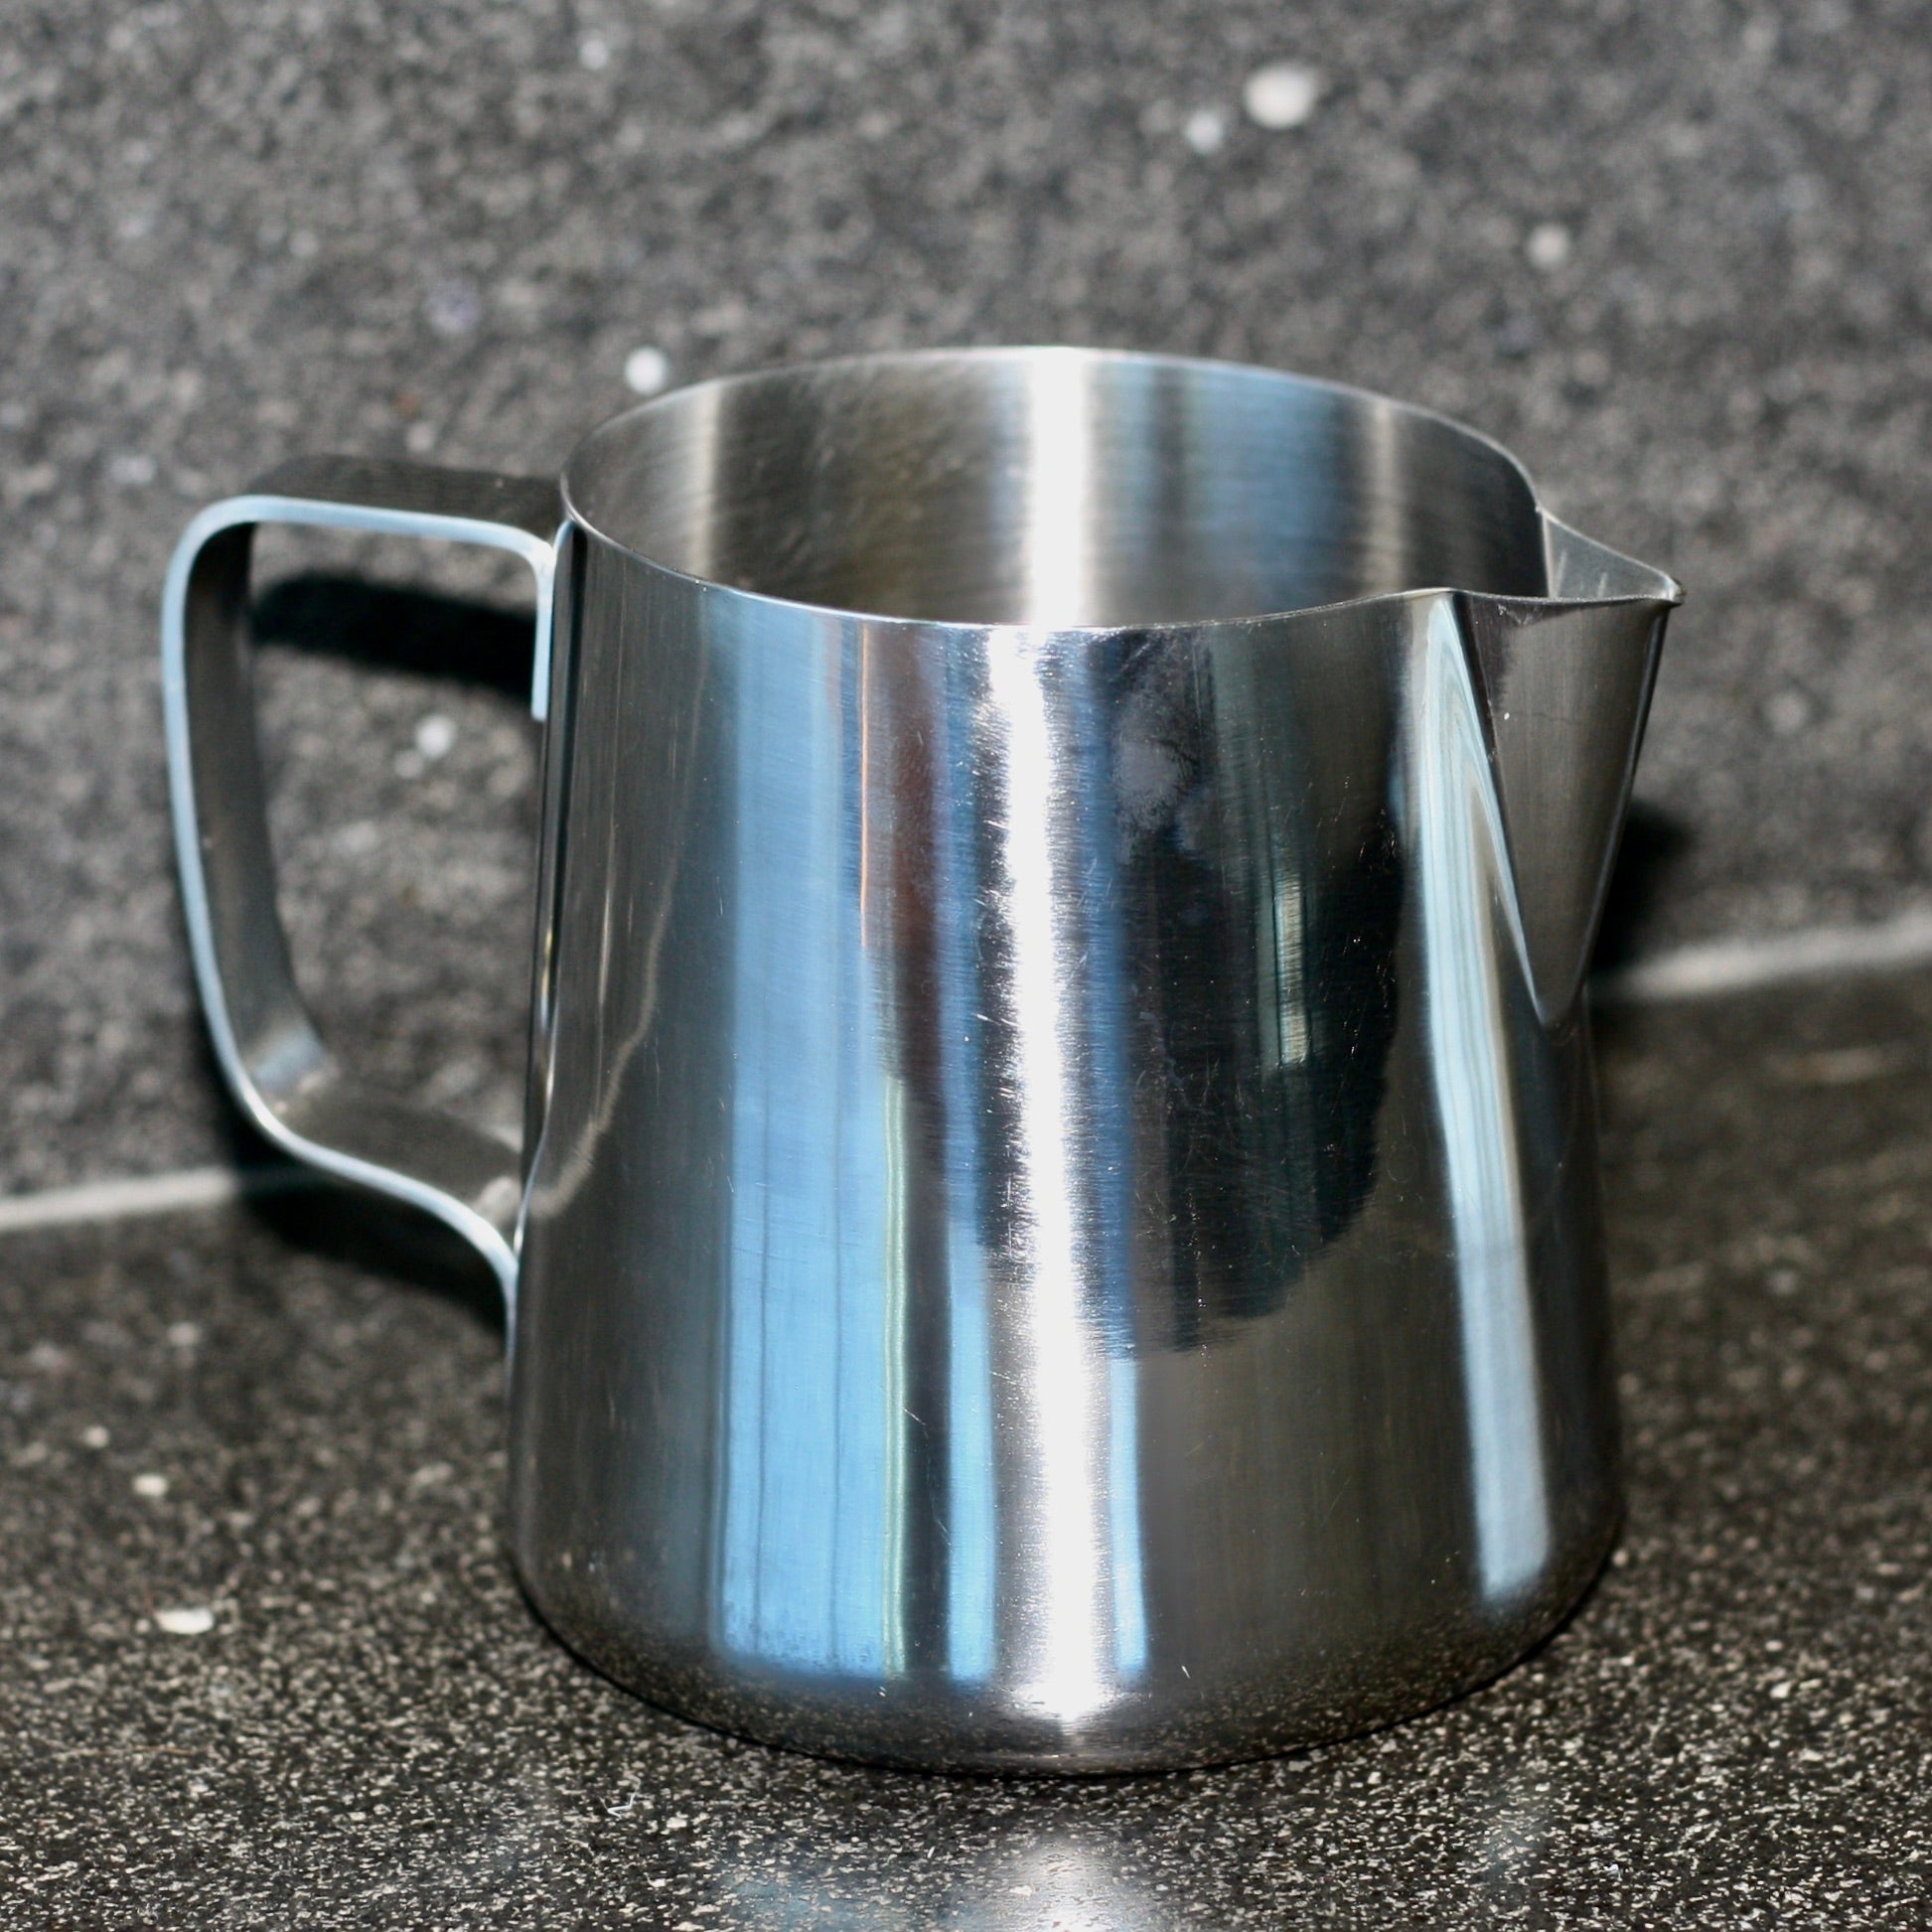 Milk frothing jug